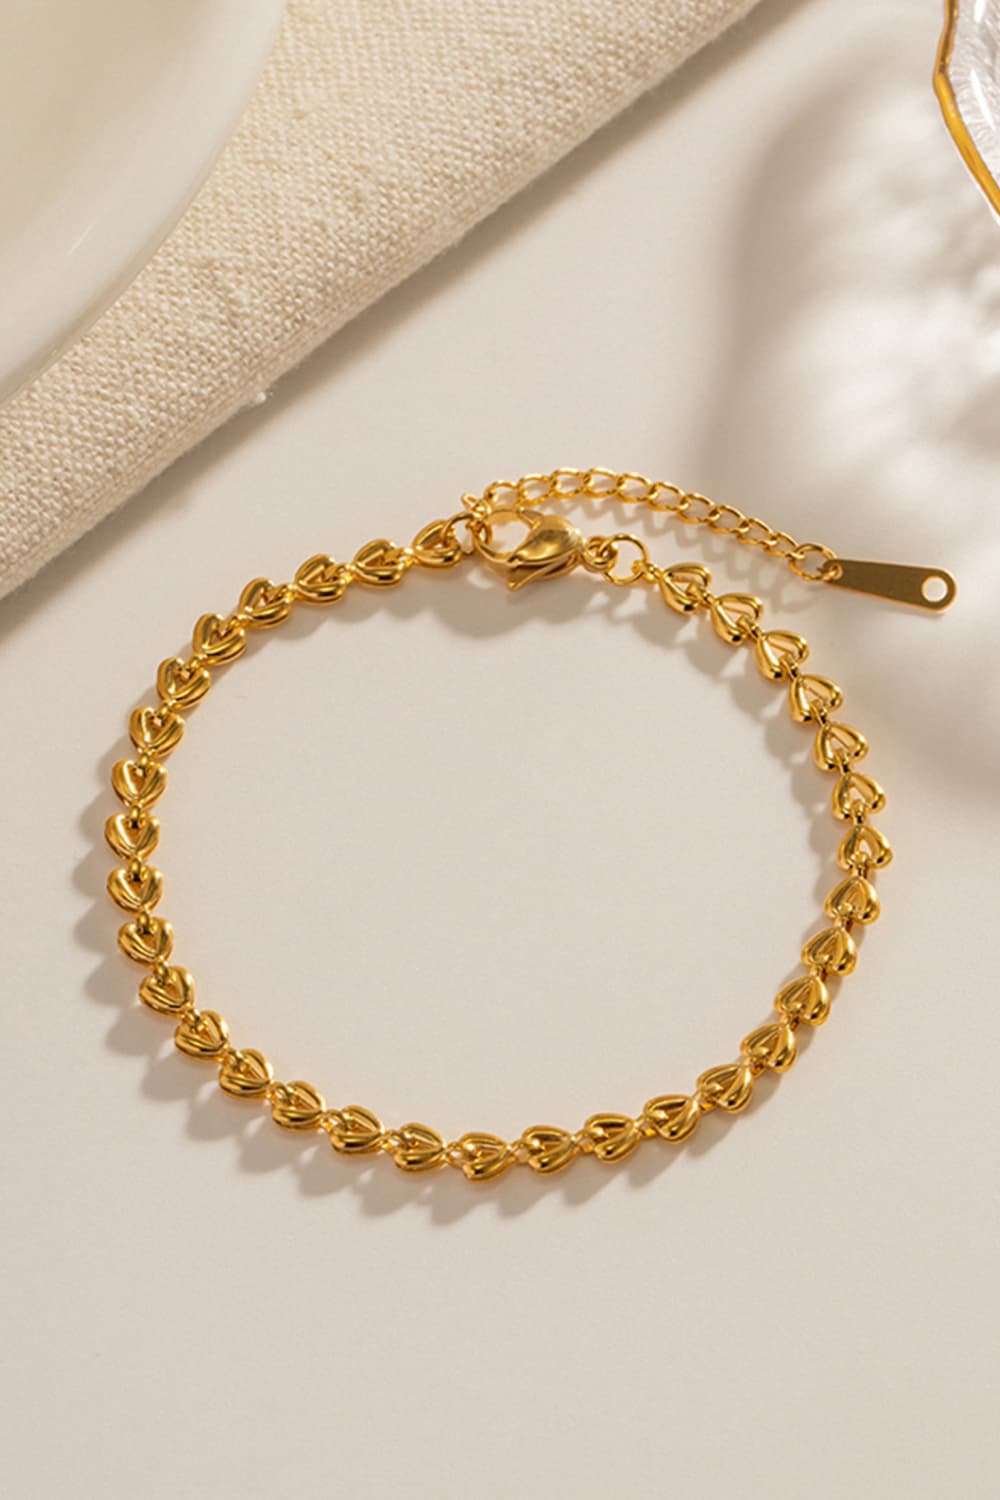 Heart Chain Lobster Clasp Bracelet - Gold / One Size - Women’s Jewelry - Bracelets - 5 - 2024